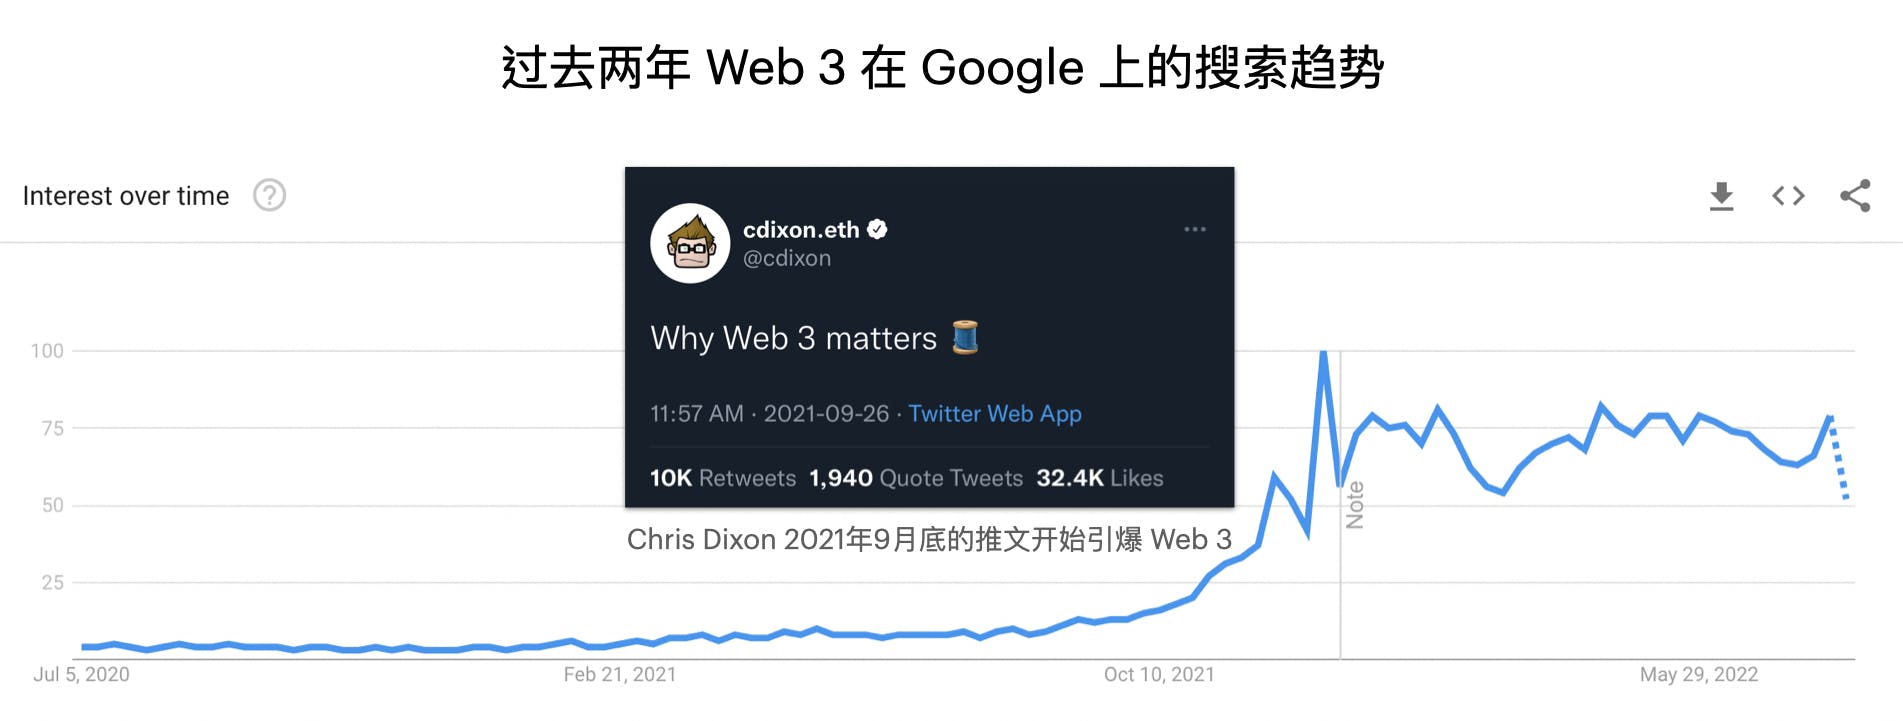 配图04： Web 3 Google Trending + Dixon Twitter